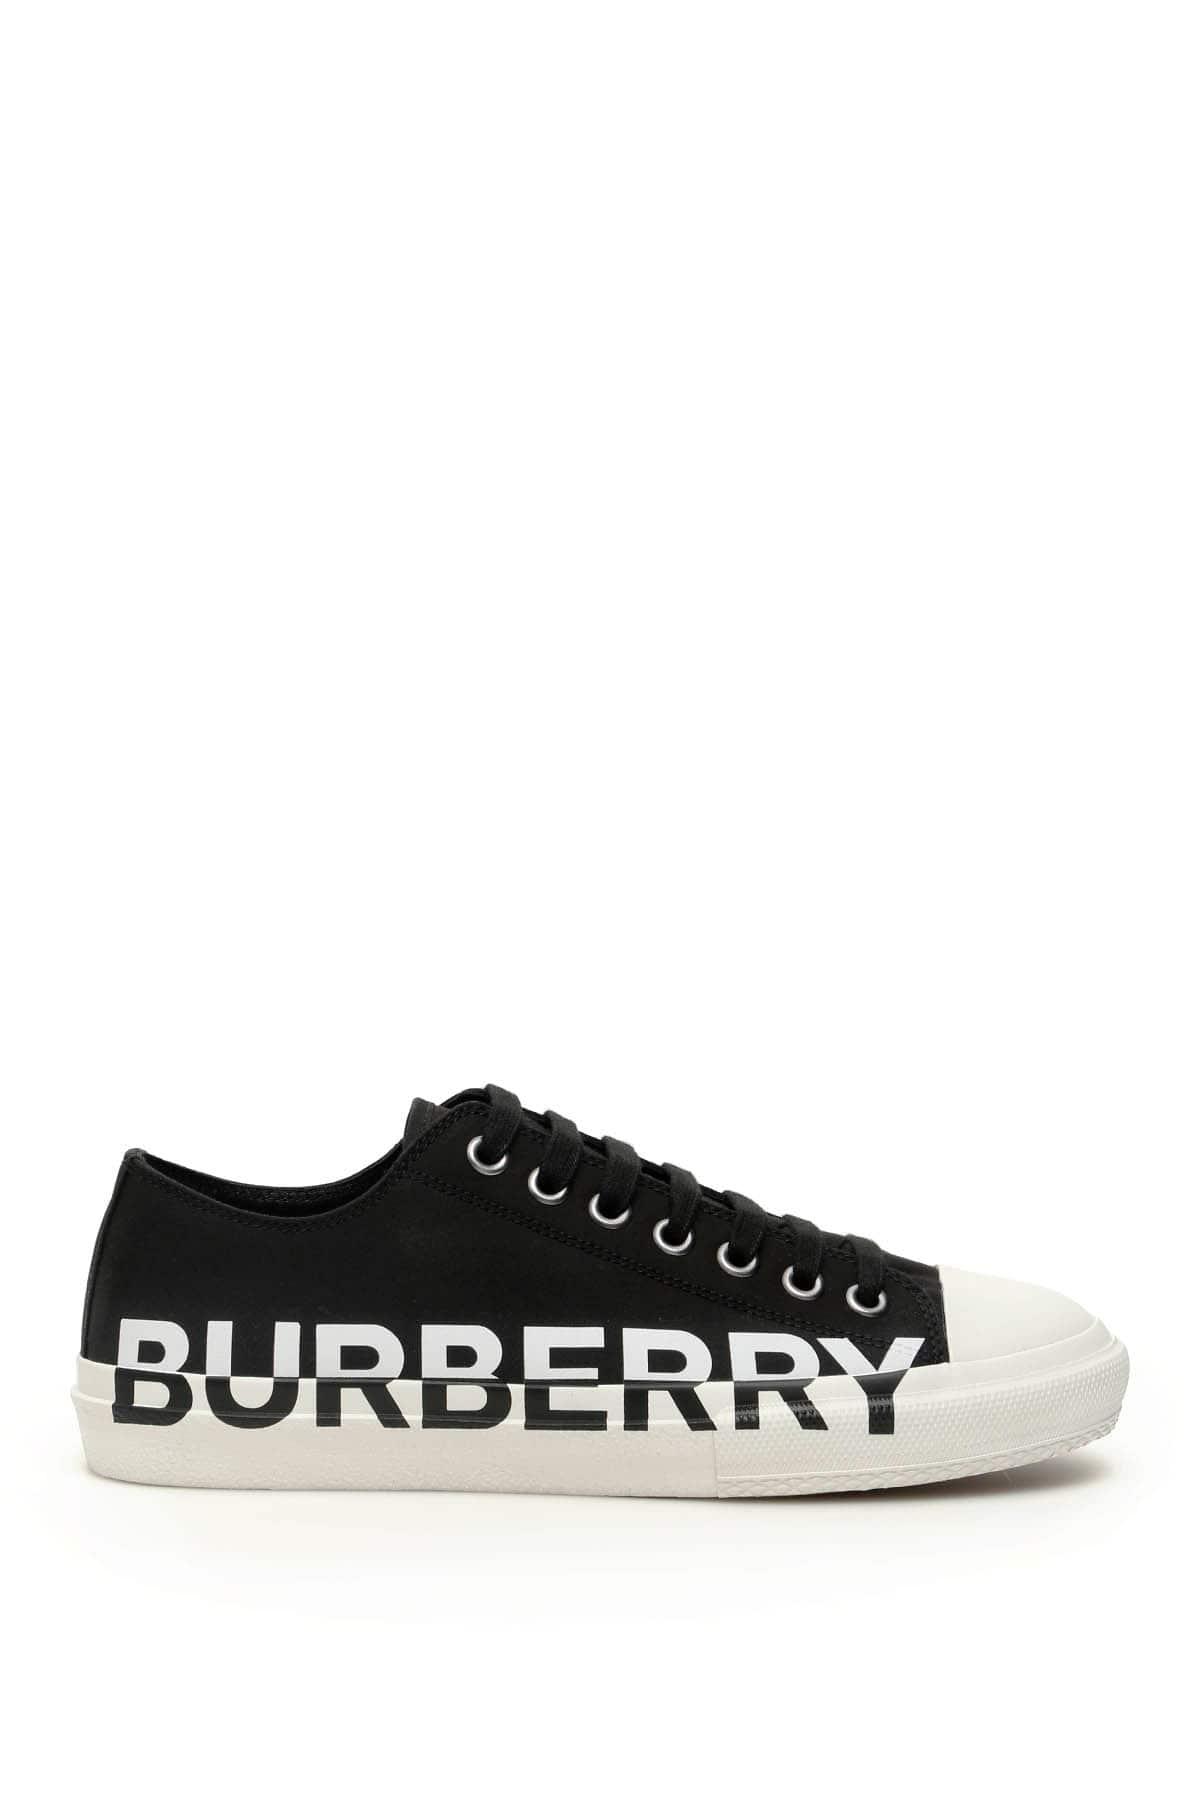 Burberry Rubber Larkhall Sneakers in Black,White (Black) for Men - Lyst